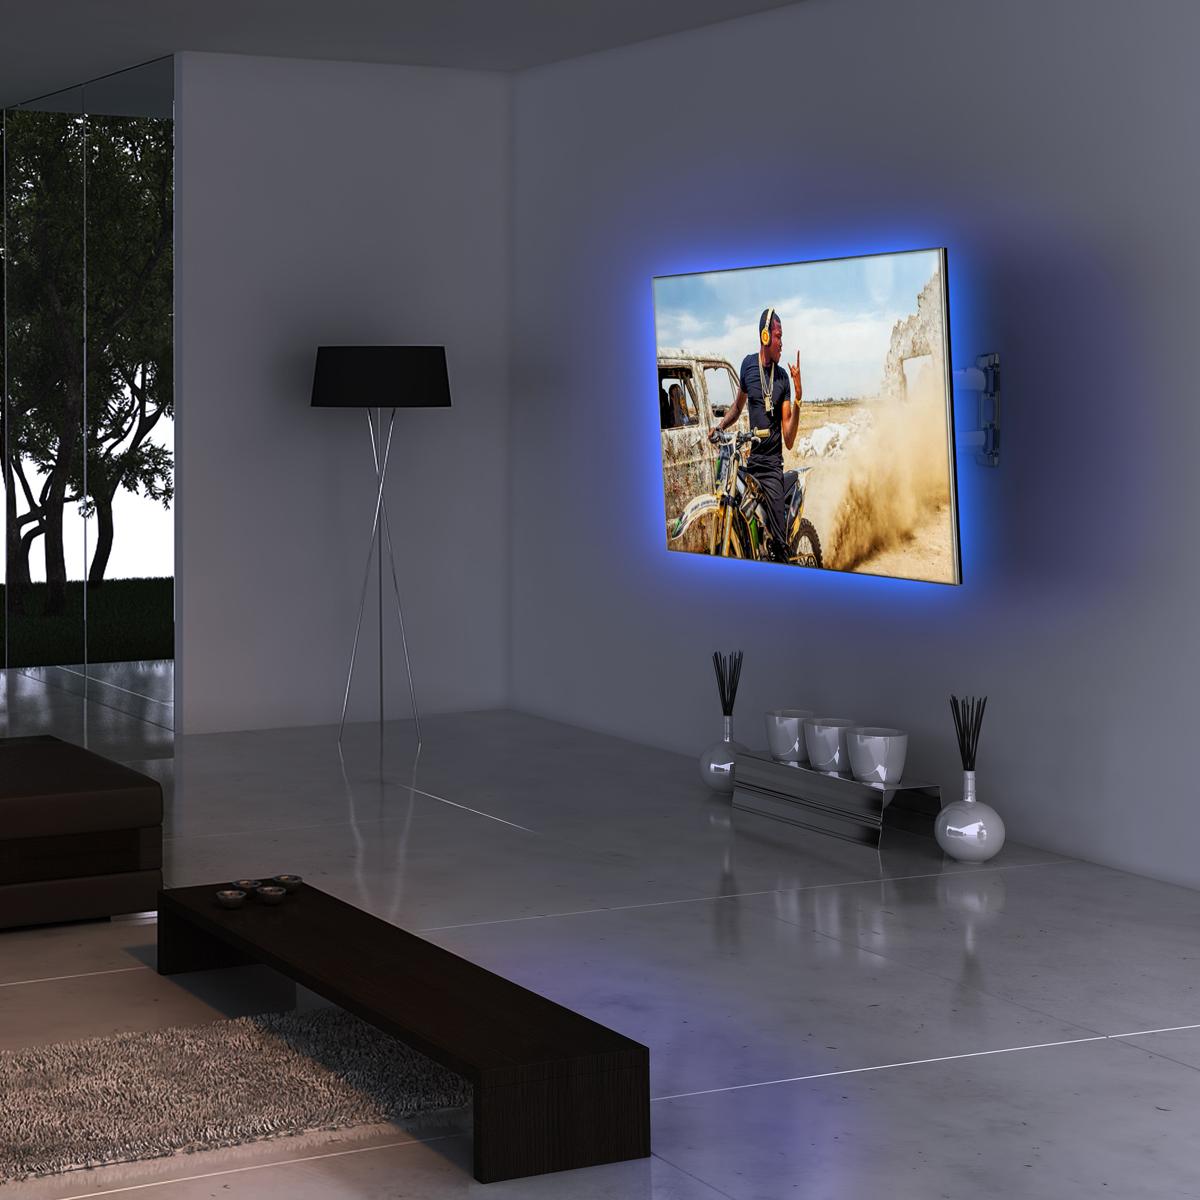 Kit Banda LED SMART2 pentru Iluminare Ambientala Multicolor RGB in Spatele Televizorului Backlight TV cu Telecomanda